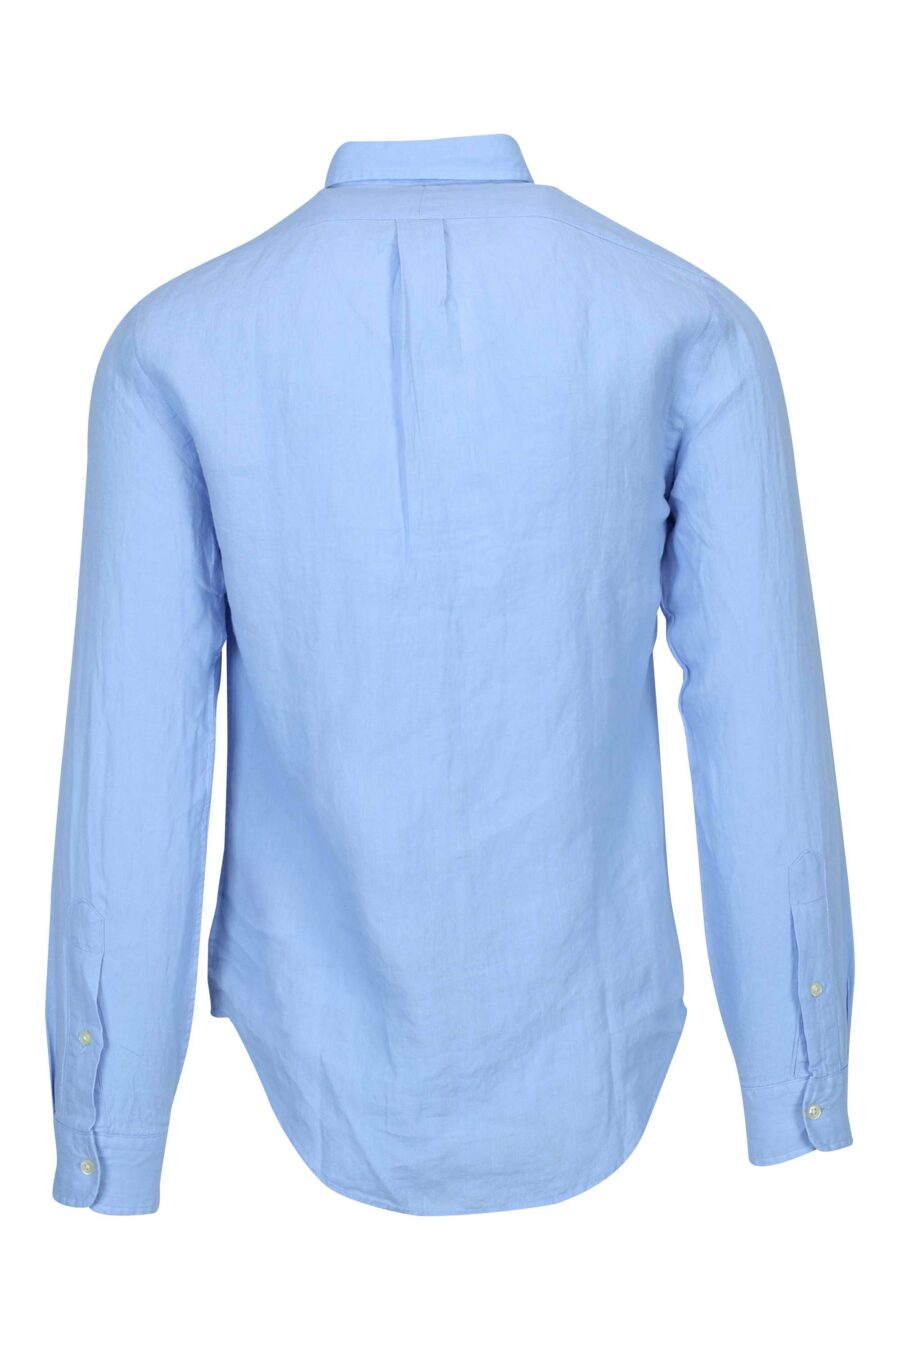 Chemise bleue avec mini-logo "polo" - 3616535910850 1